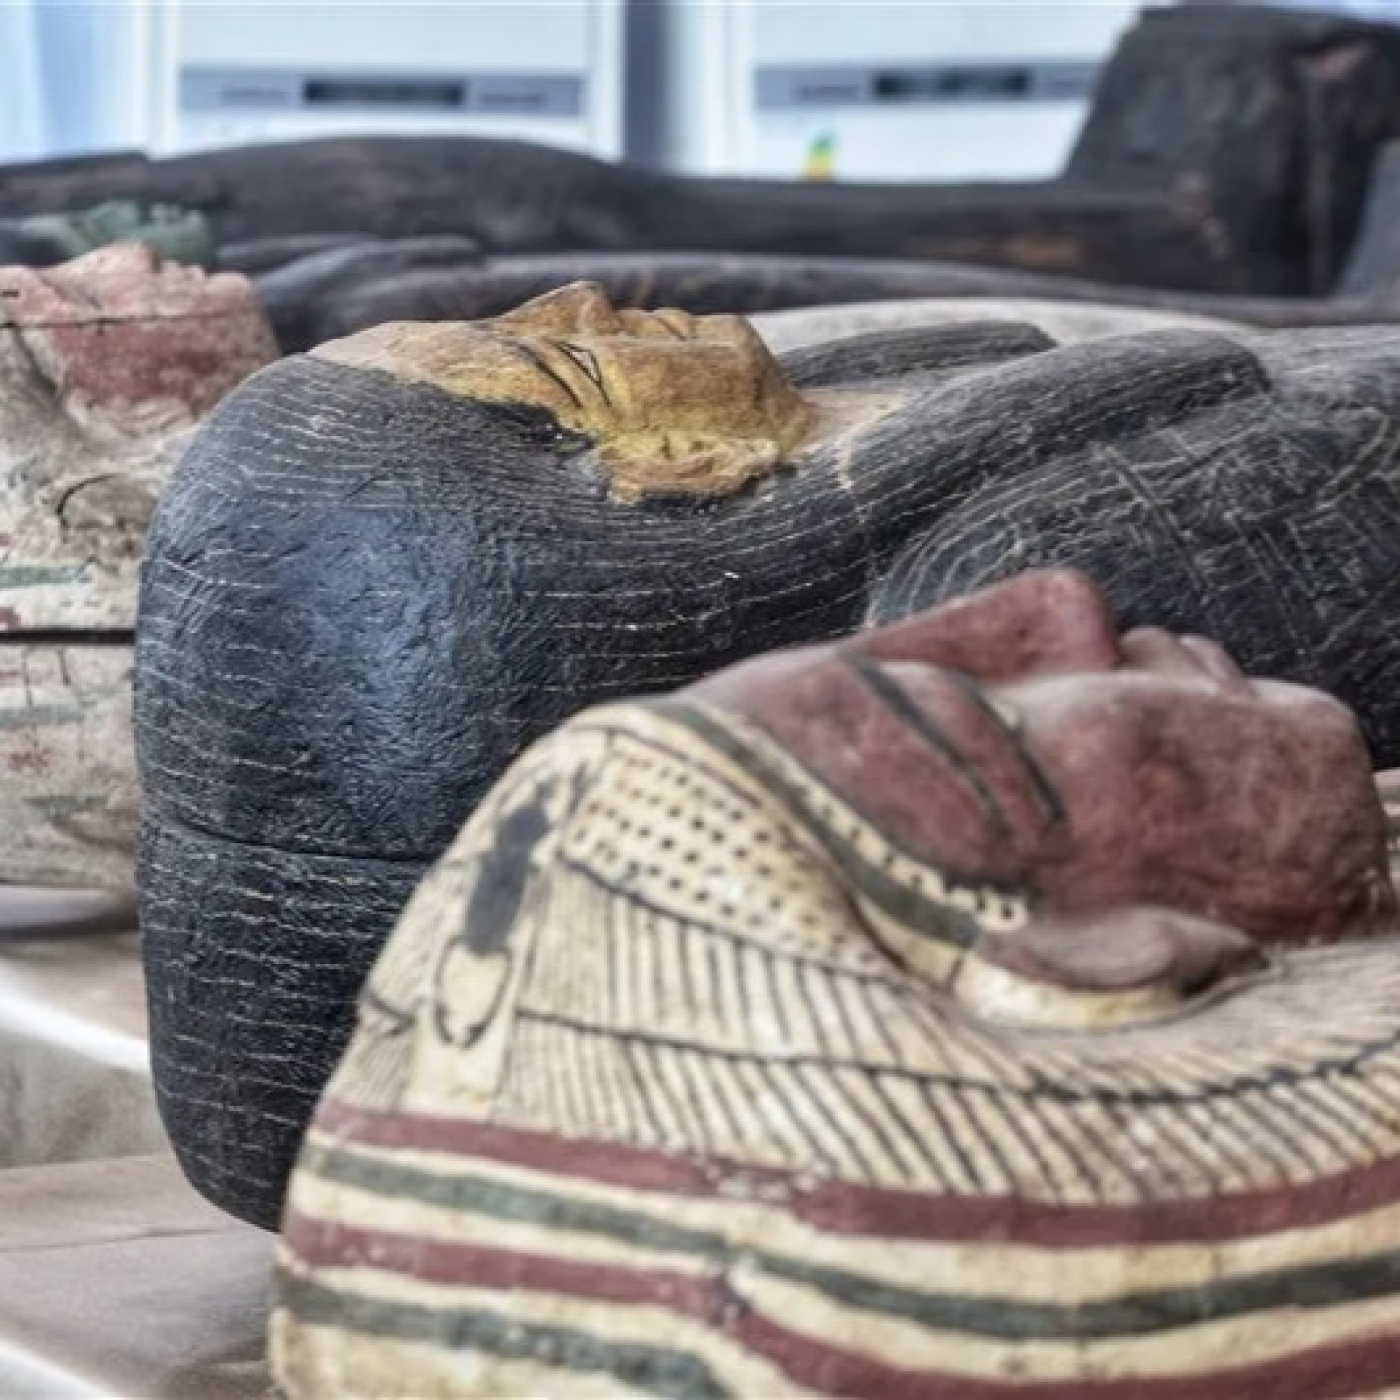 TUMBAS DE EGIPTO, ULTIMAS EXCAVACIONES:1- LAS MOMIAS OLVIDADAS DE SAQQARA #documental #arqueologia #podcast